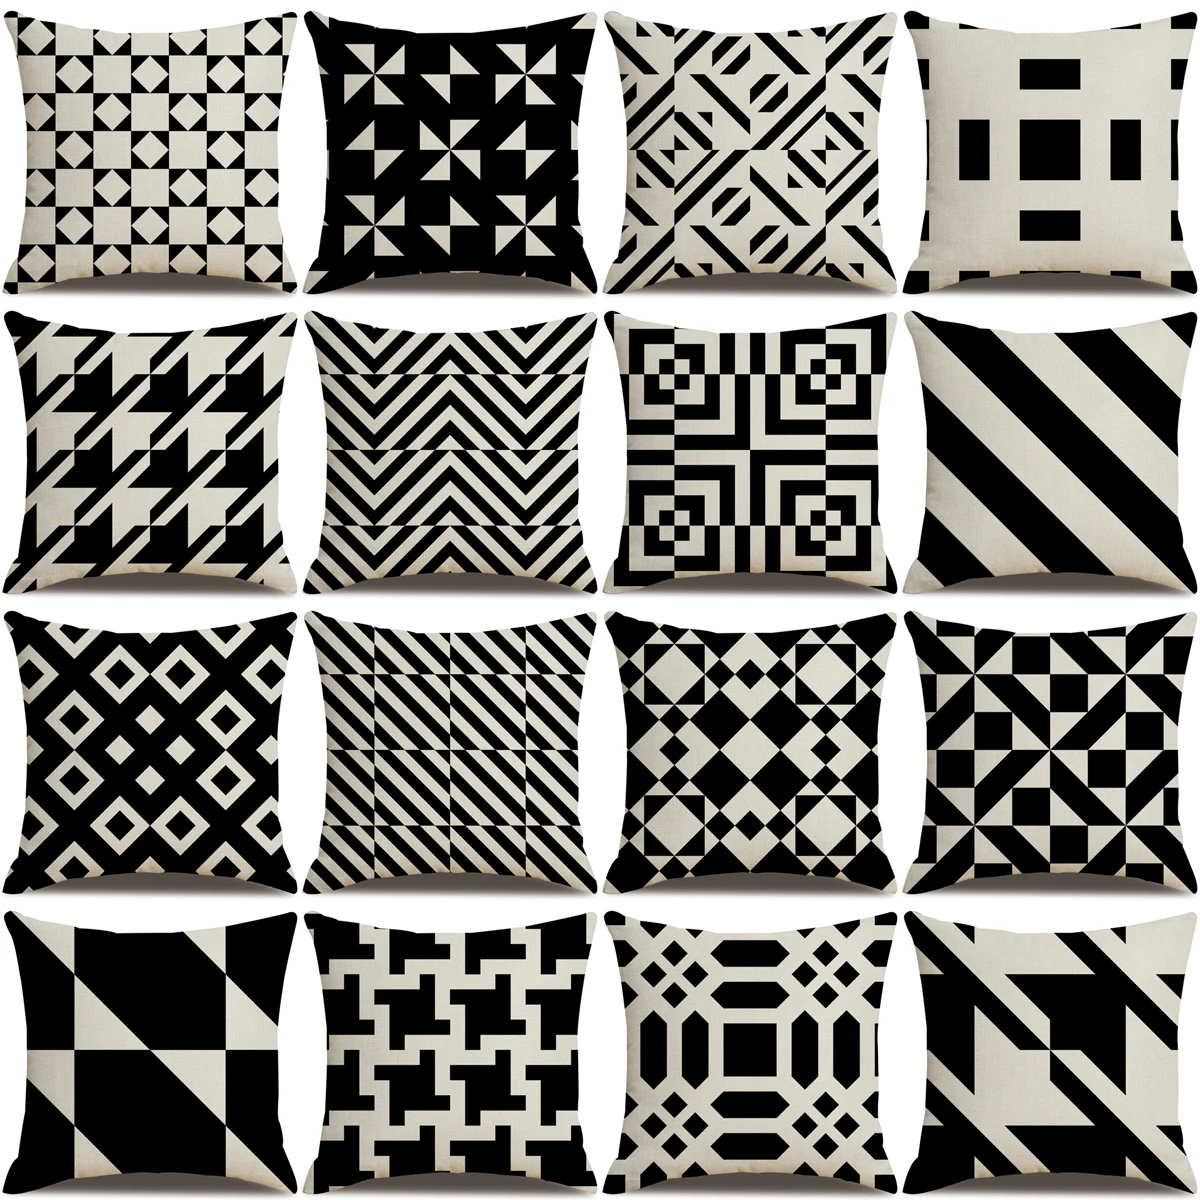 

Простые черные и белые льняные наволочки ZHENHE с геометрическим рисунком, украшение для дома, наволочка, чехол для подушки, 18x18 дюймов